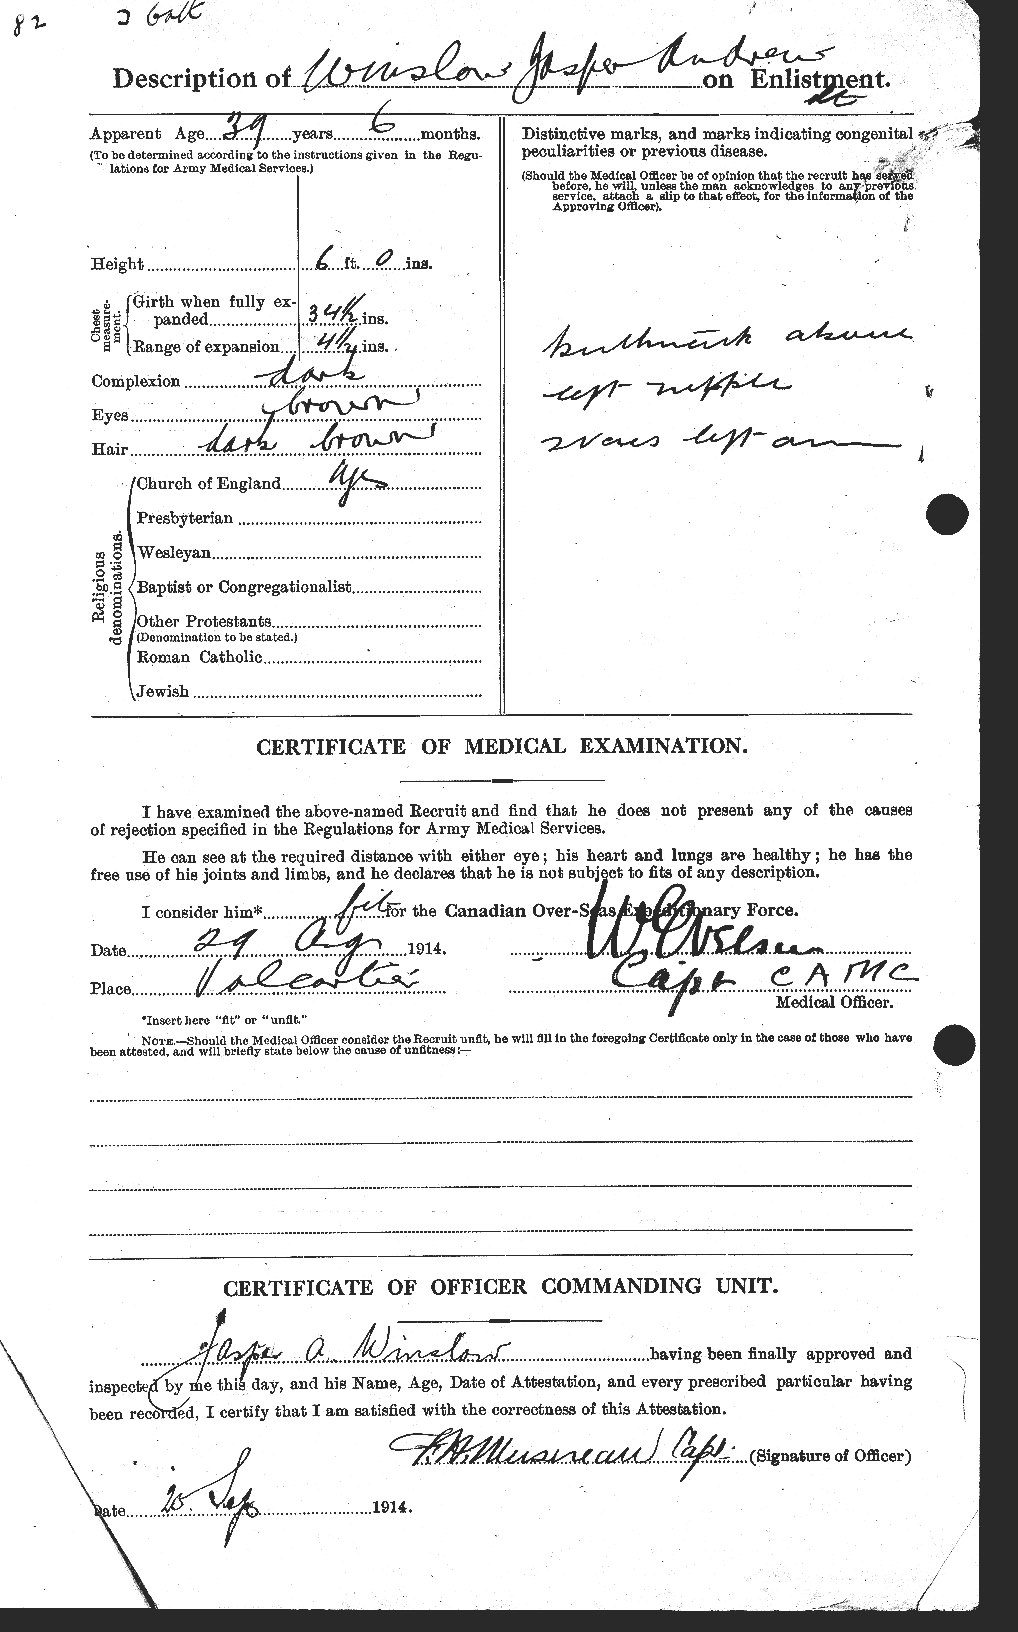 Dossiers du Personnel de la Première Guerre mondiale - CEC 679207b